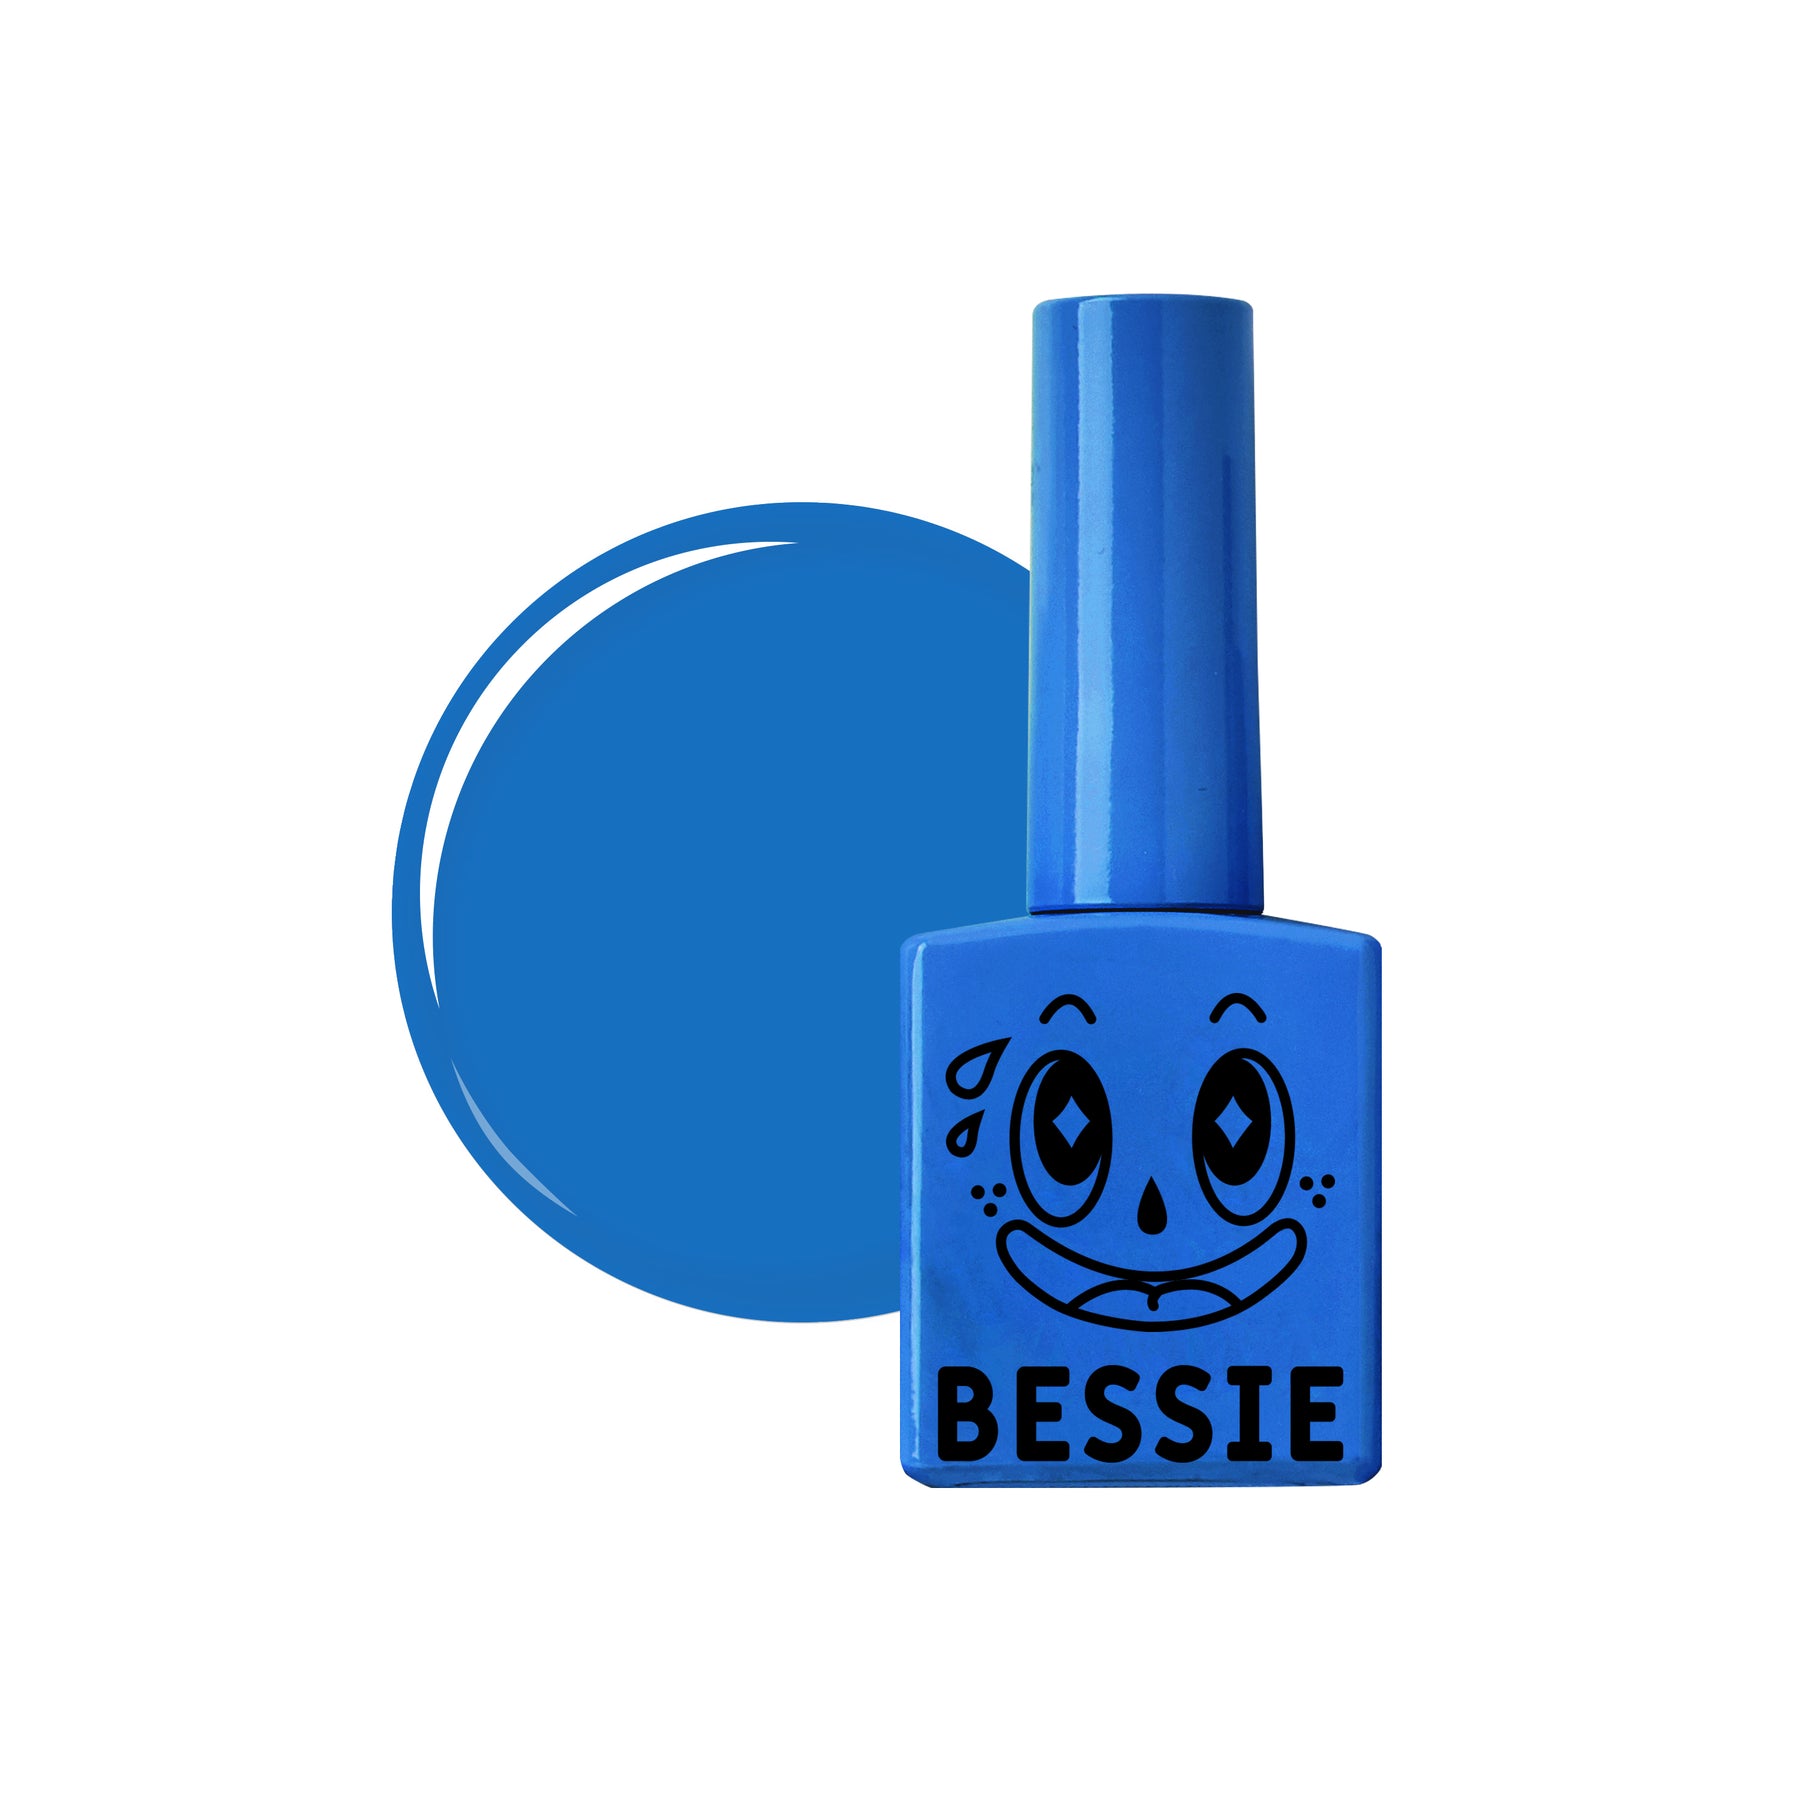 Bessie Joyful Summer Collection - 12pc set / 1pc